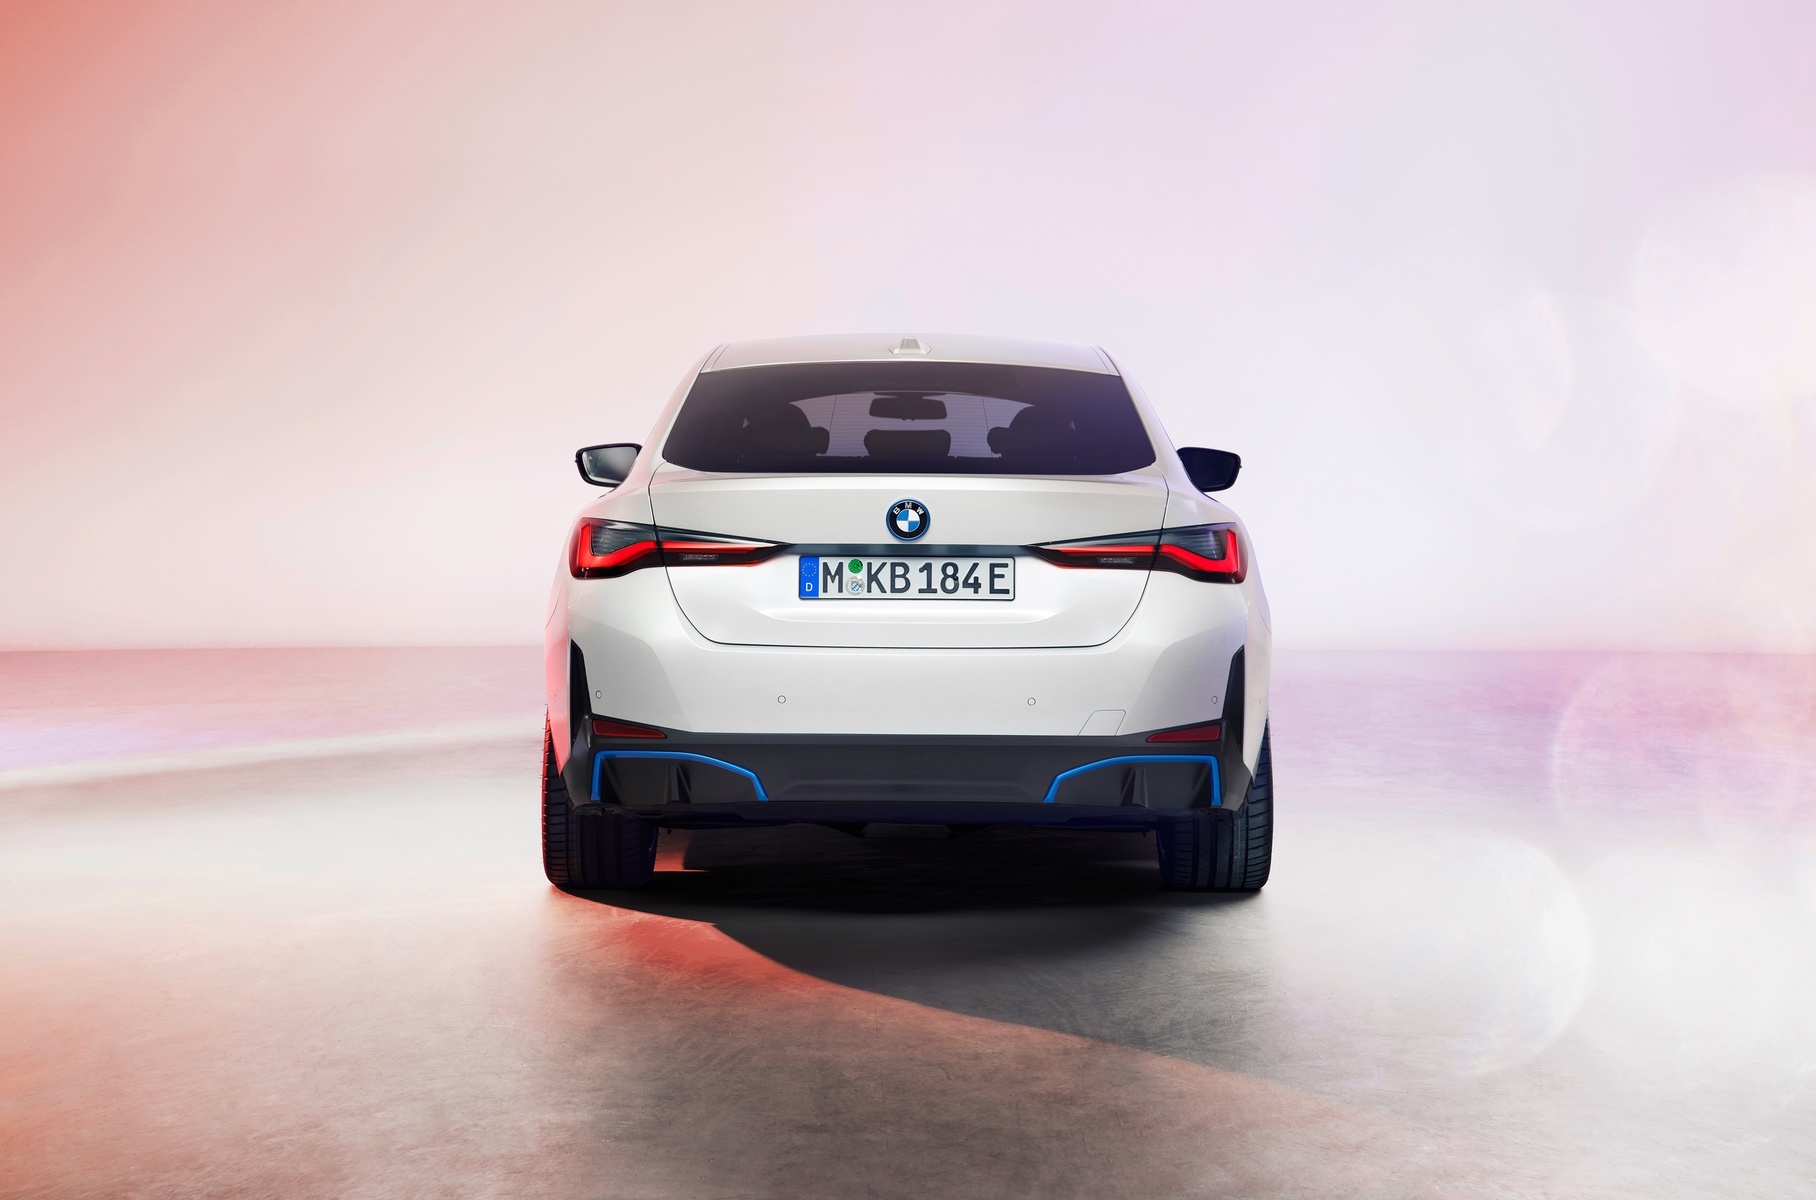 BMW раскрыла внешность электрического лифтбека i4